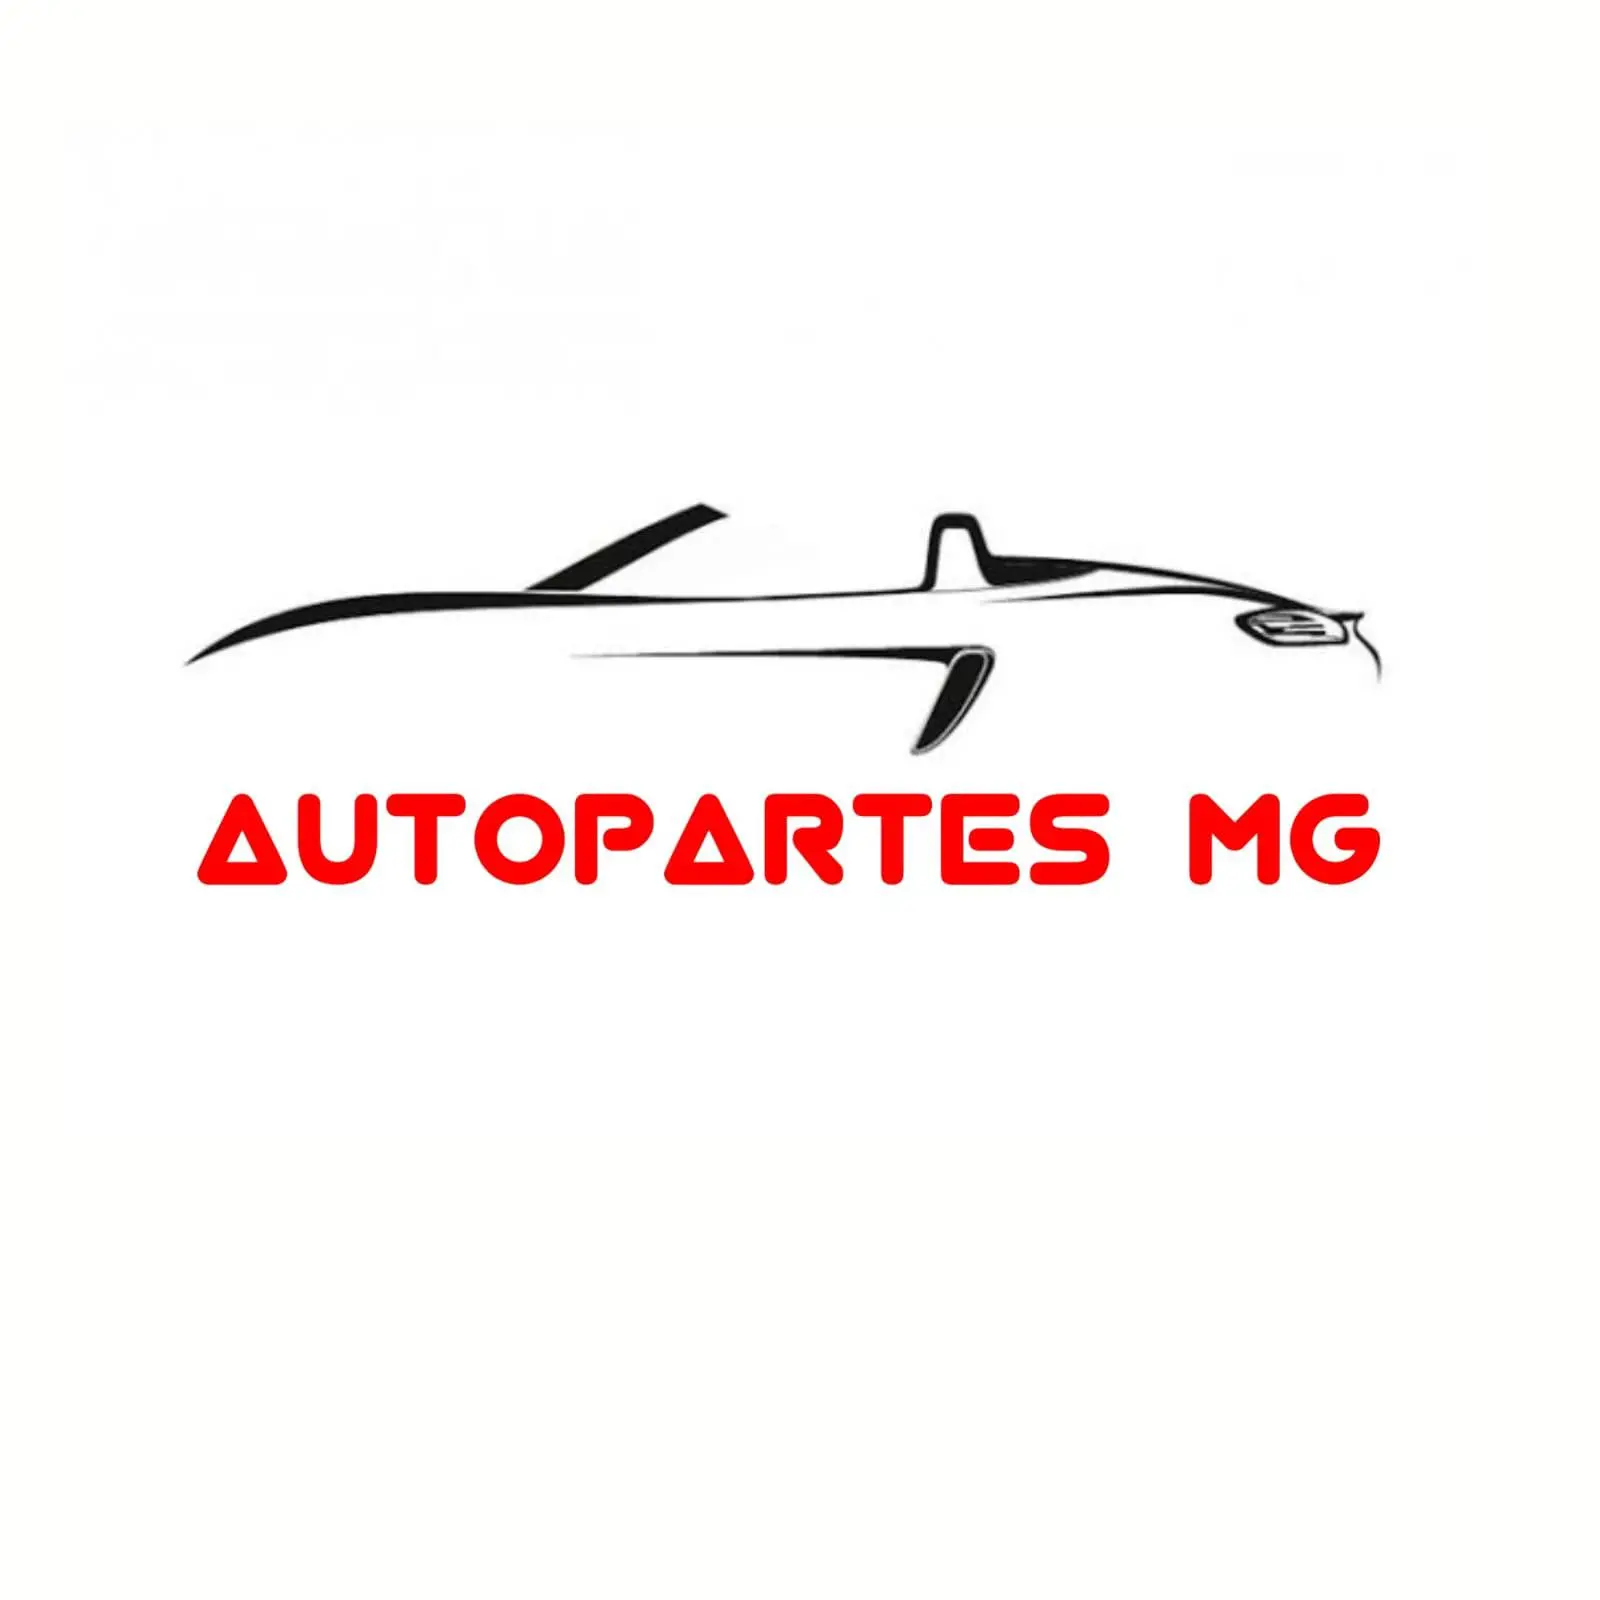 AUTOPARTES MG